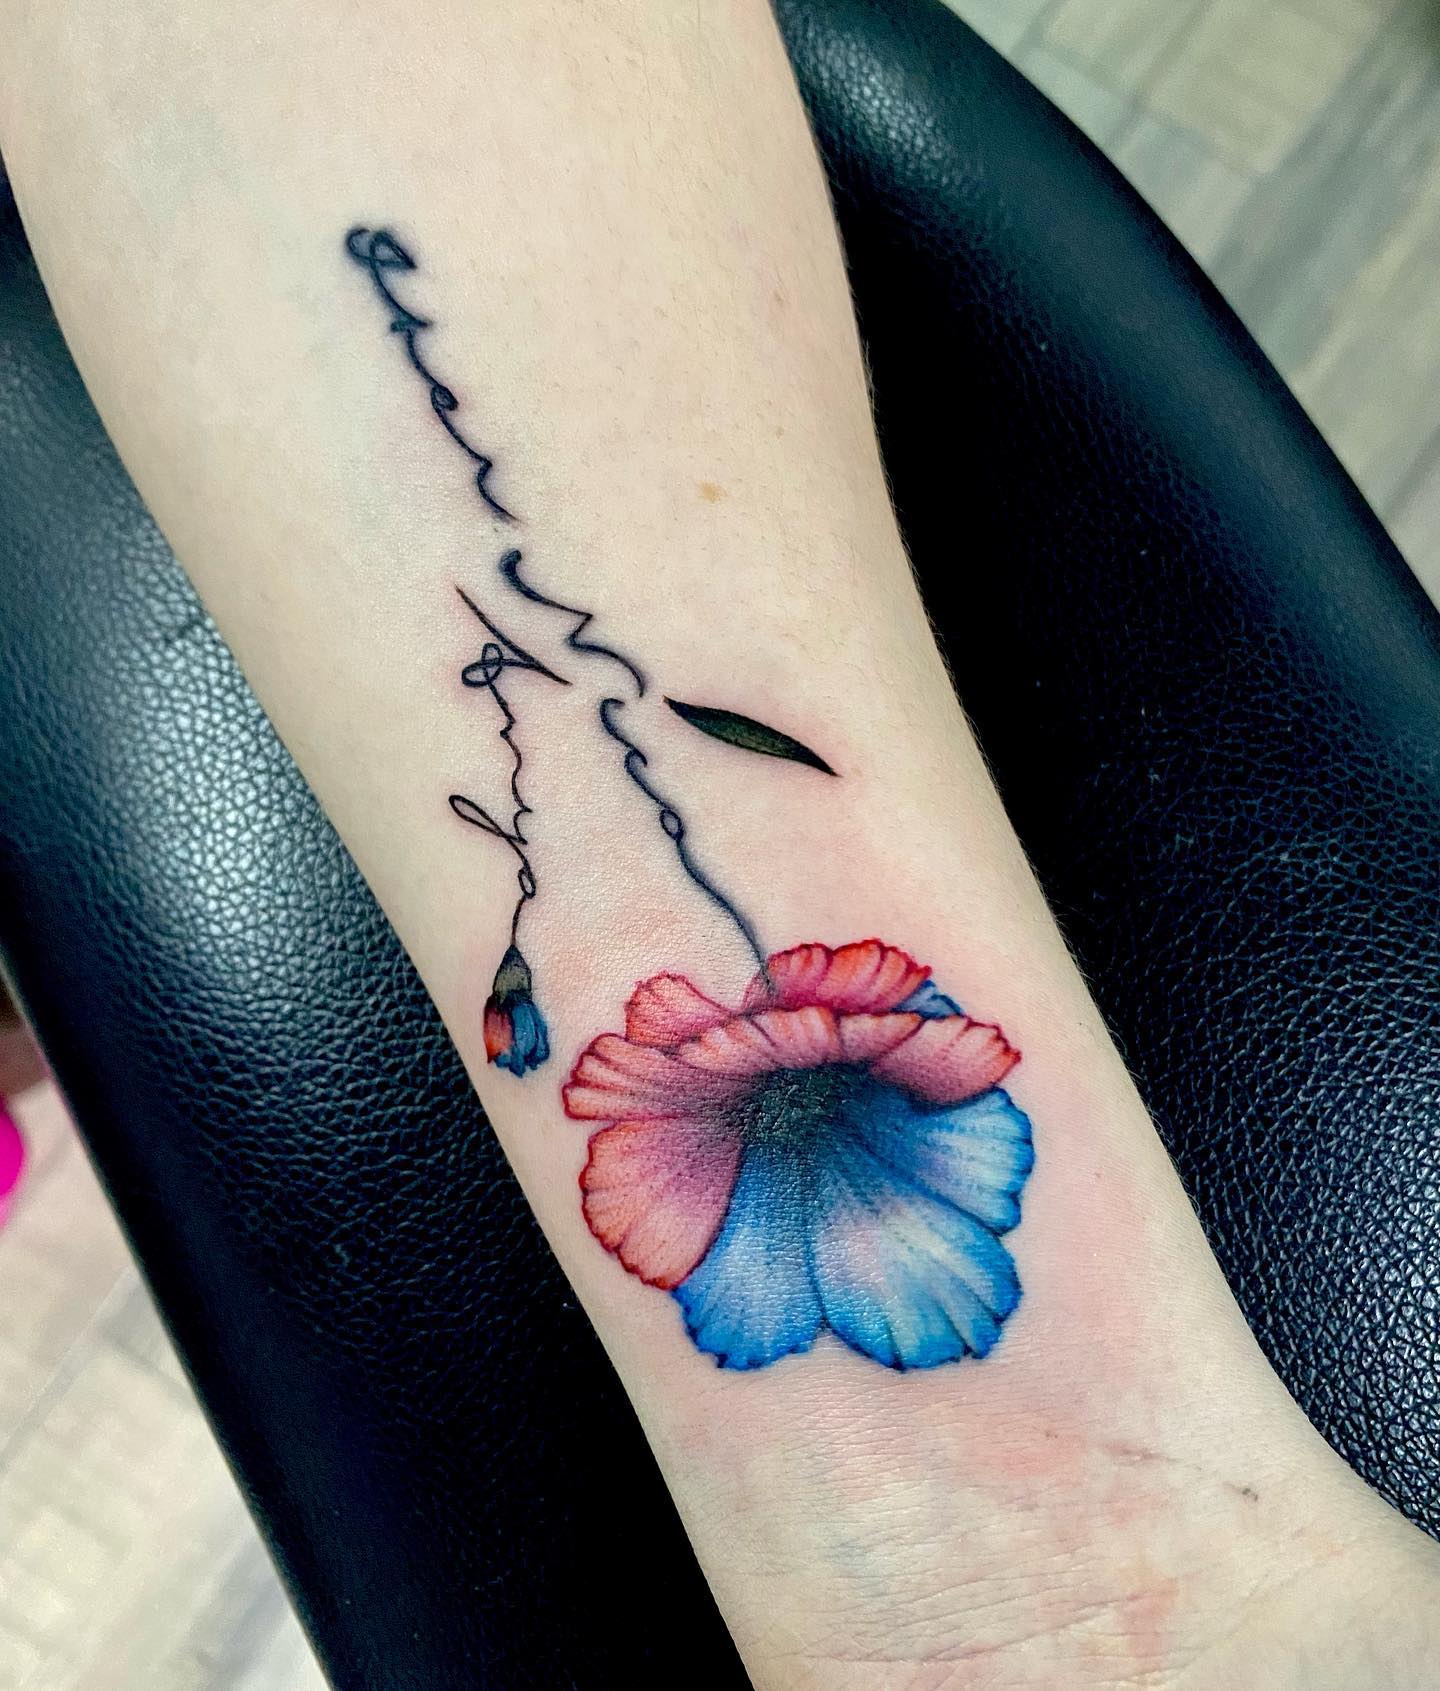 Tatuaje tradicional americano de flores rojas y azules.